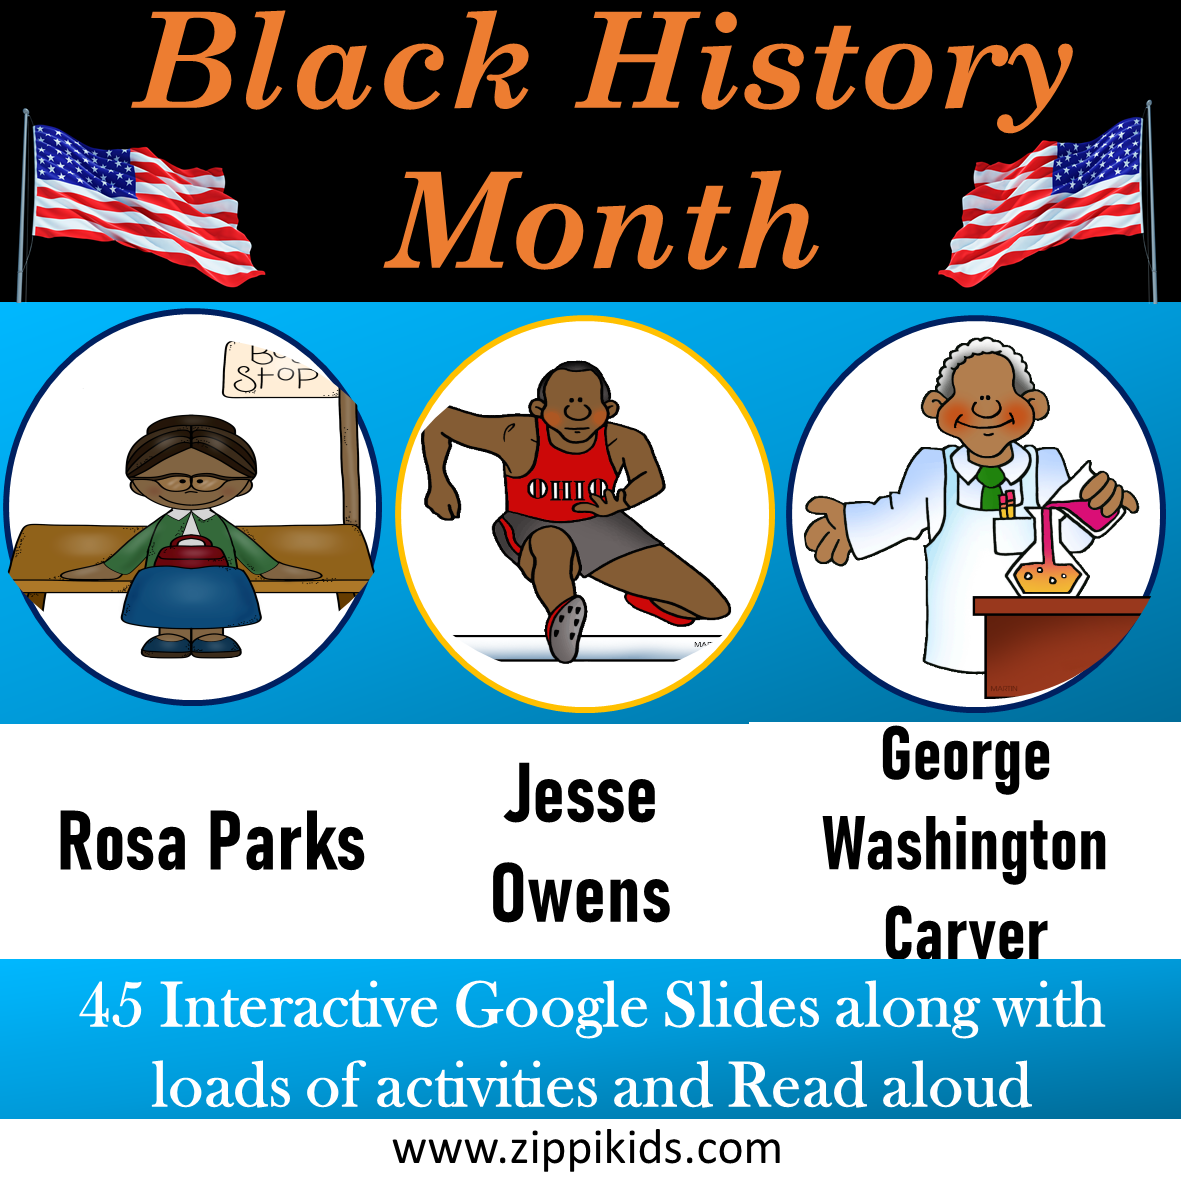 Rosa Parks, Jesse Owens, George Washington Carver - 41 Google Slides